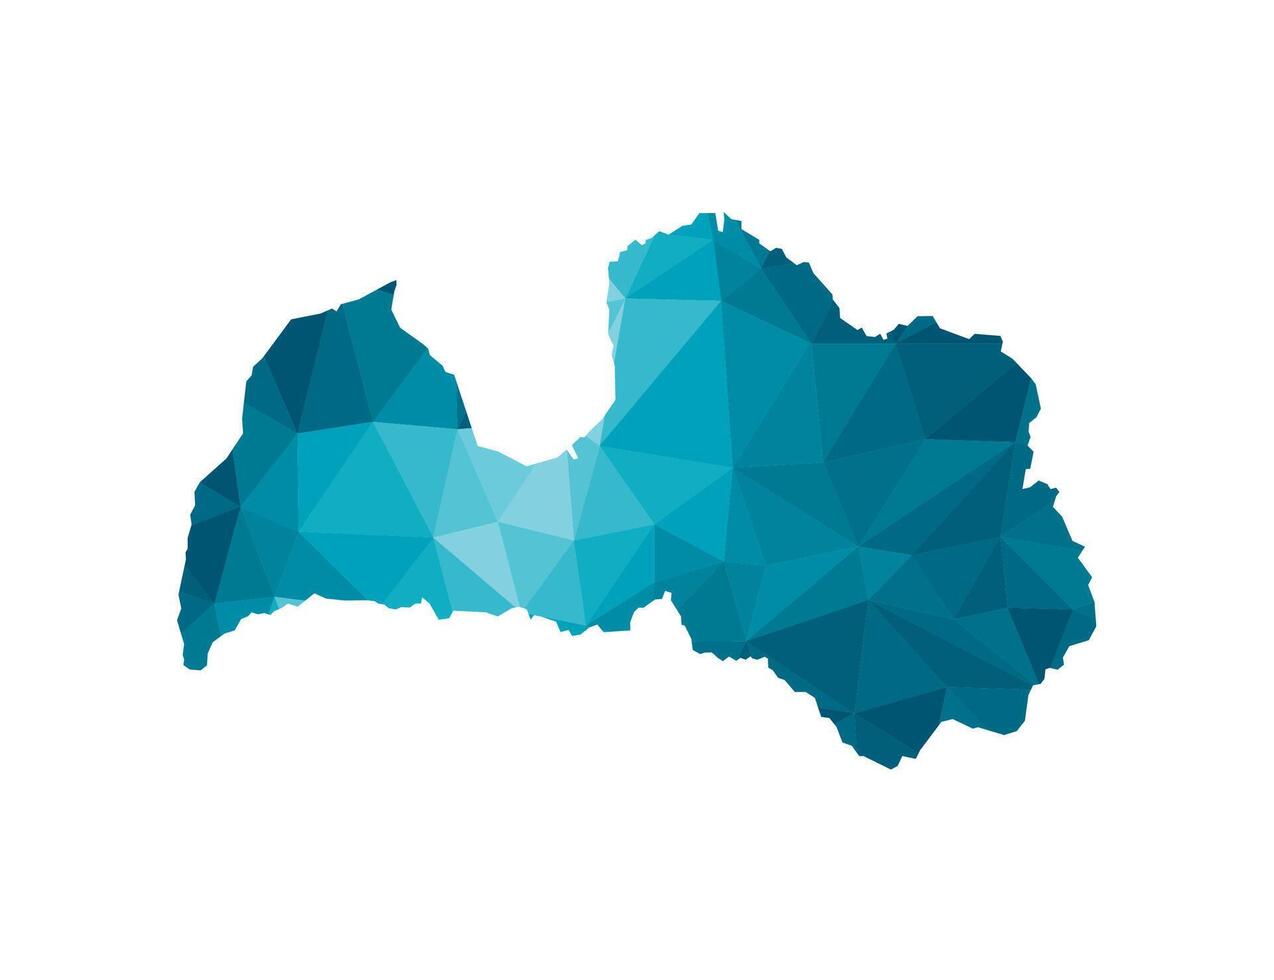 vektor isolerat illustration ikon med förenklad blå silhuett av lettland Karta. polygonal geometrisk stil, triangel- former. vit bakgrund.